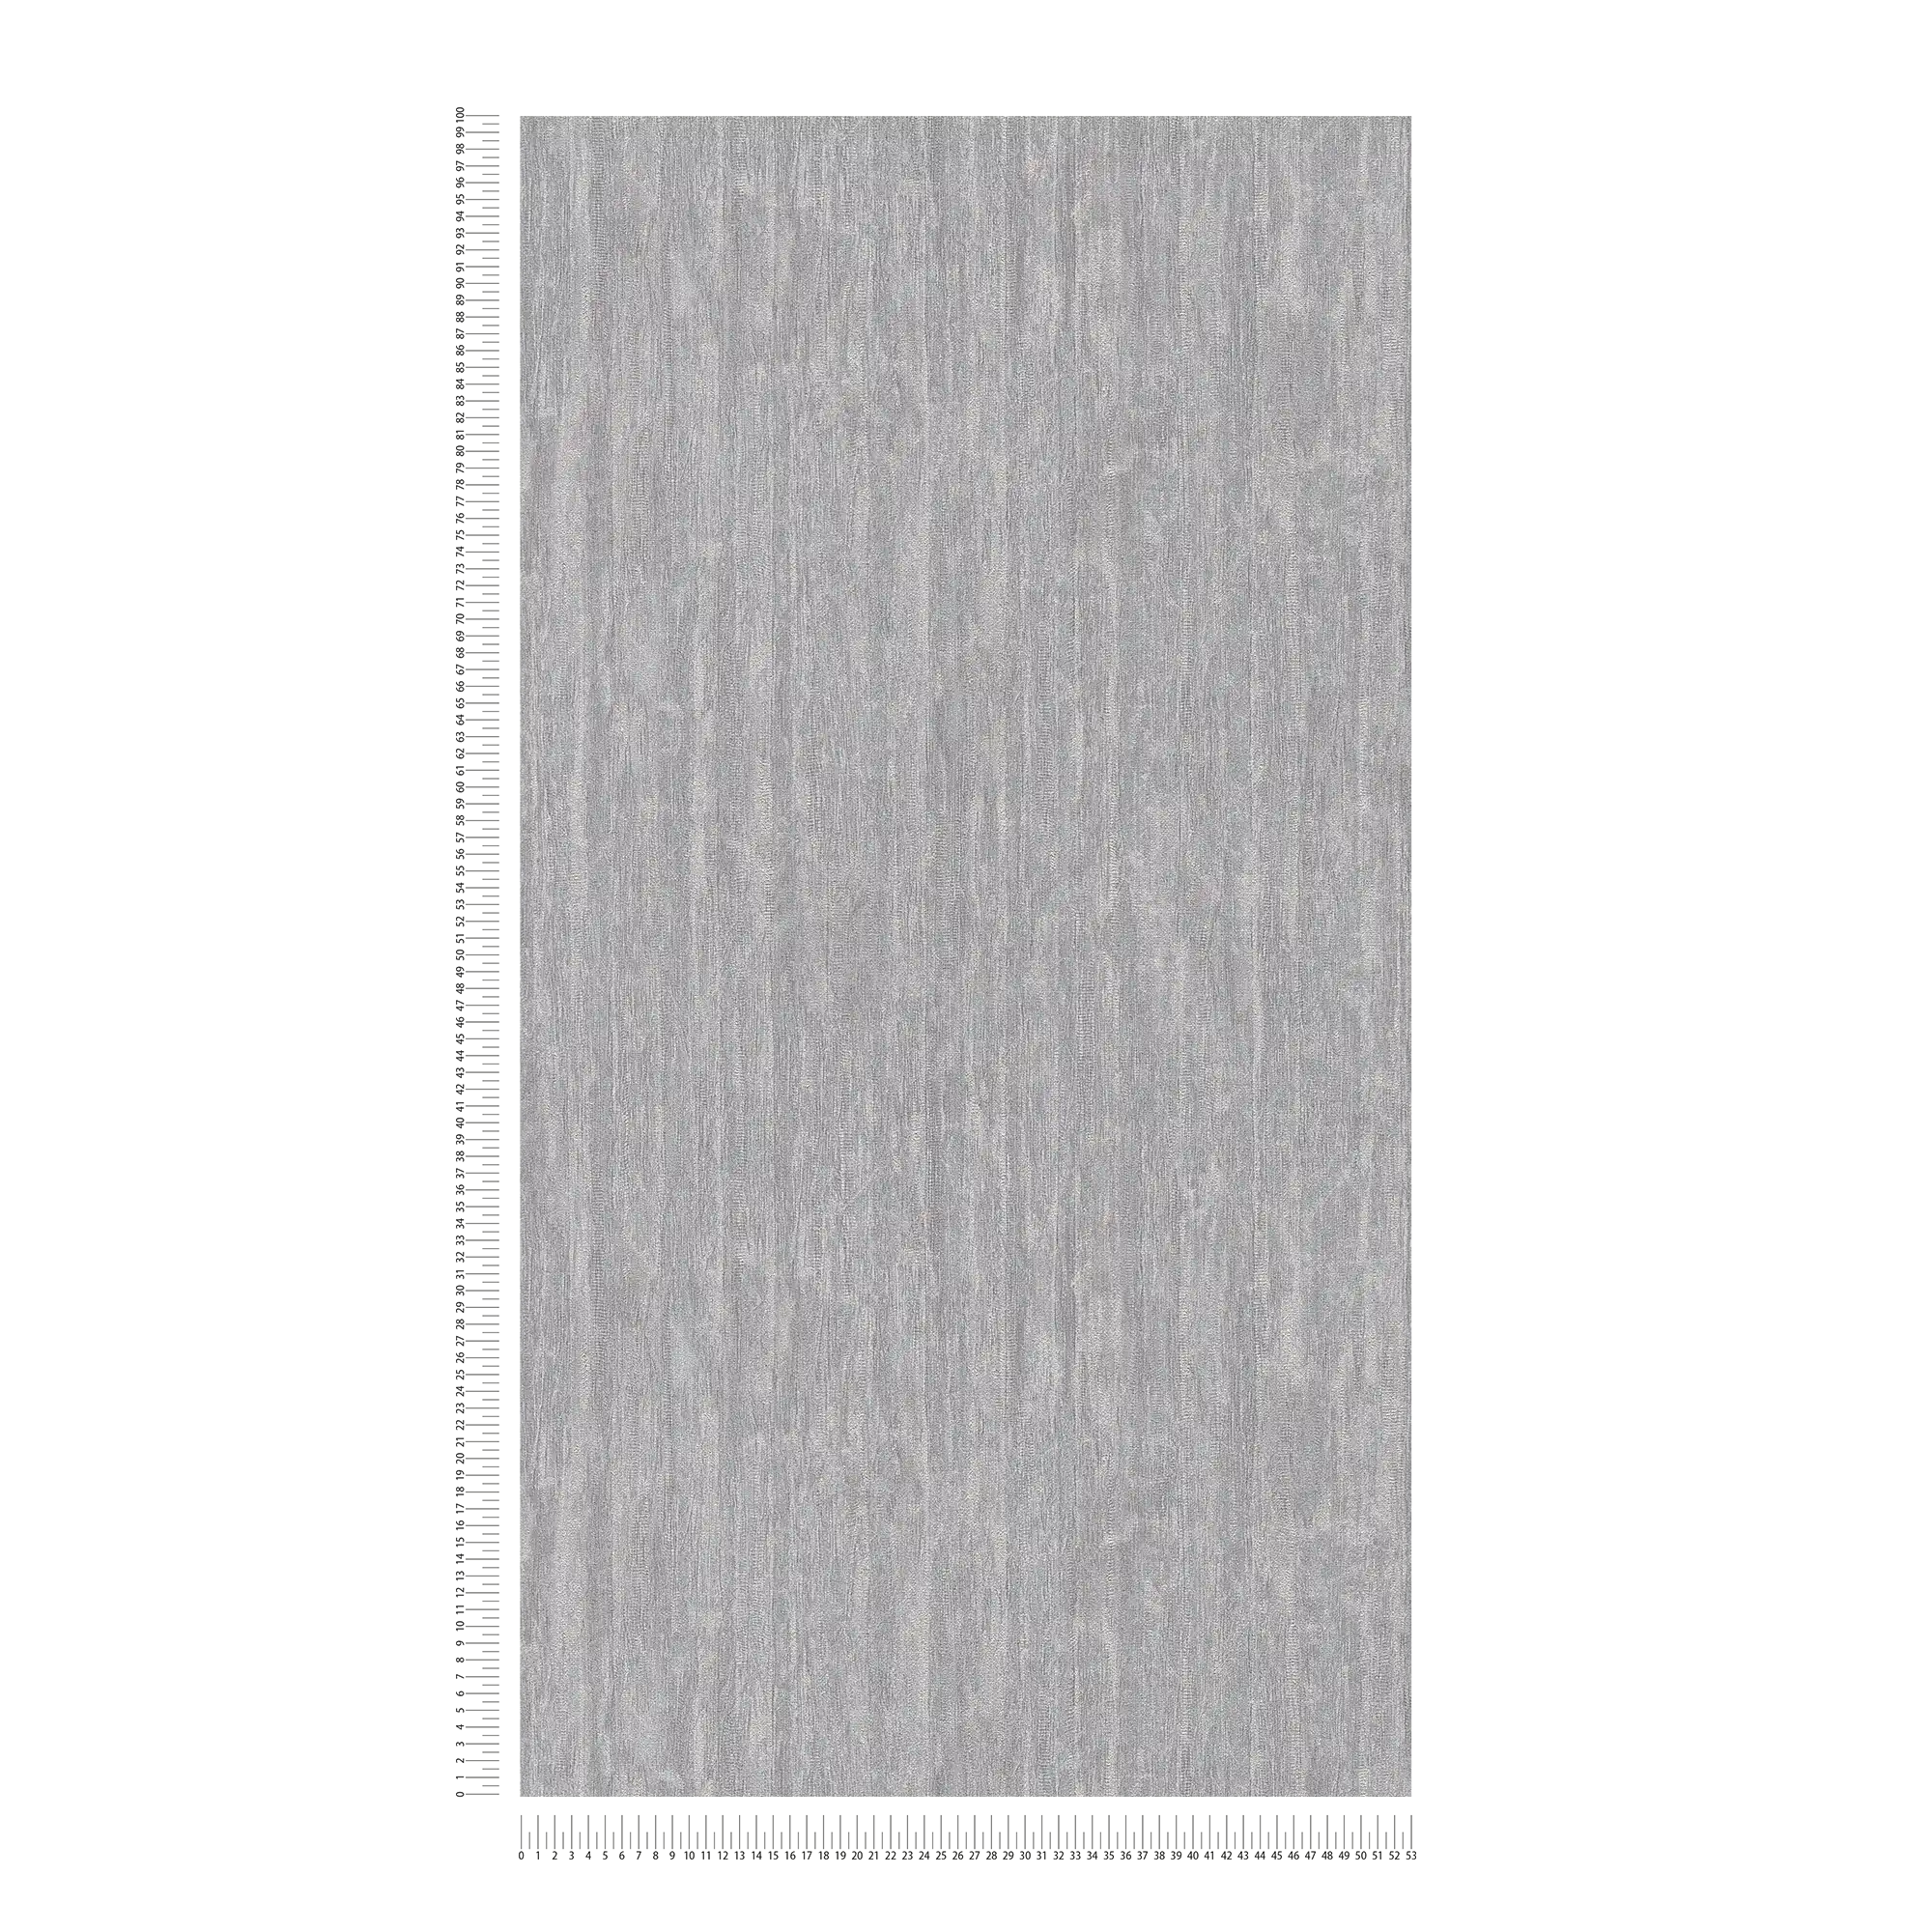             Licht glanzend behang met lijnenpatroon - grijs, zilver, metallic
        